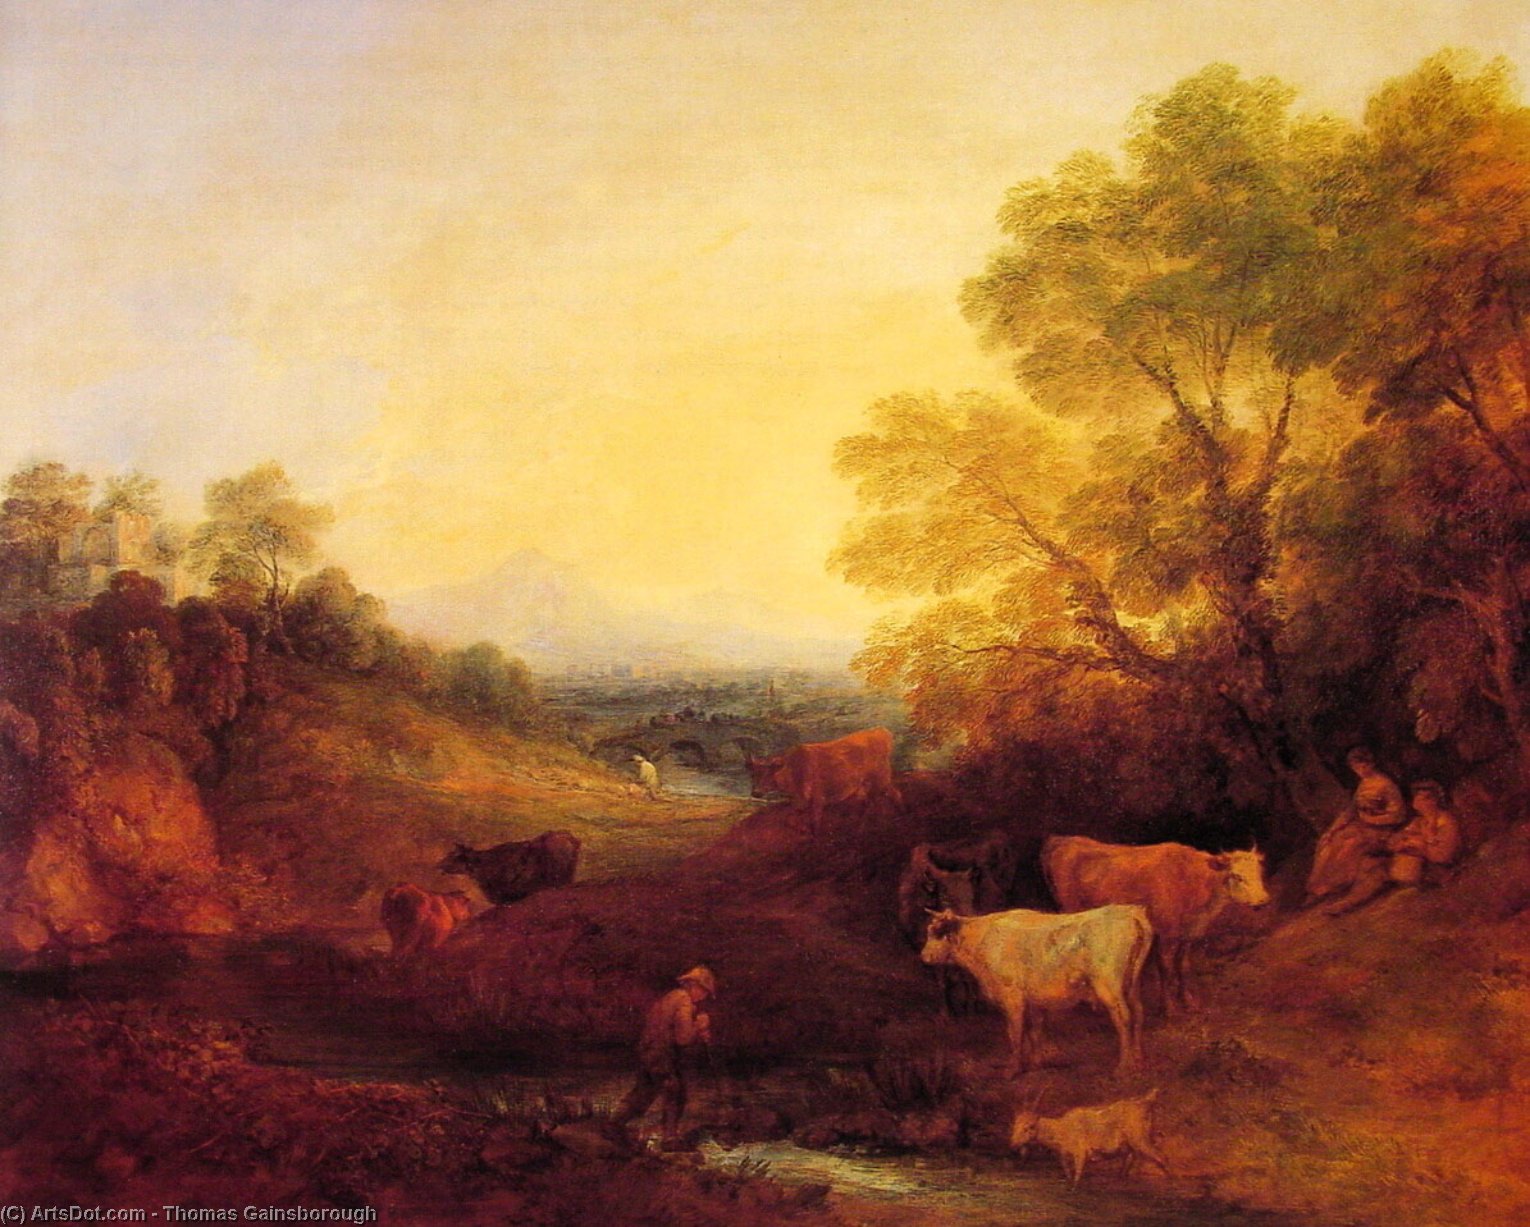 WikiOO.org - אנציקלופדיה לאמנויות יפות - ציור, יצירות אמנות Thomas Gainsborough - Landscape with Cattle